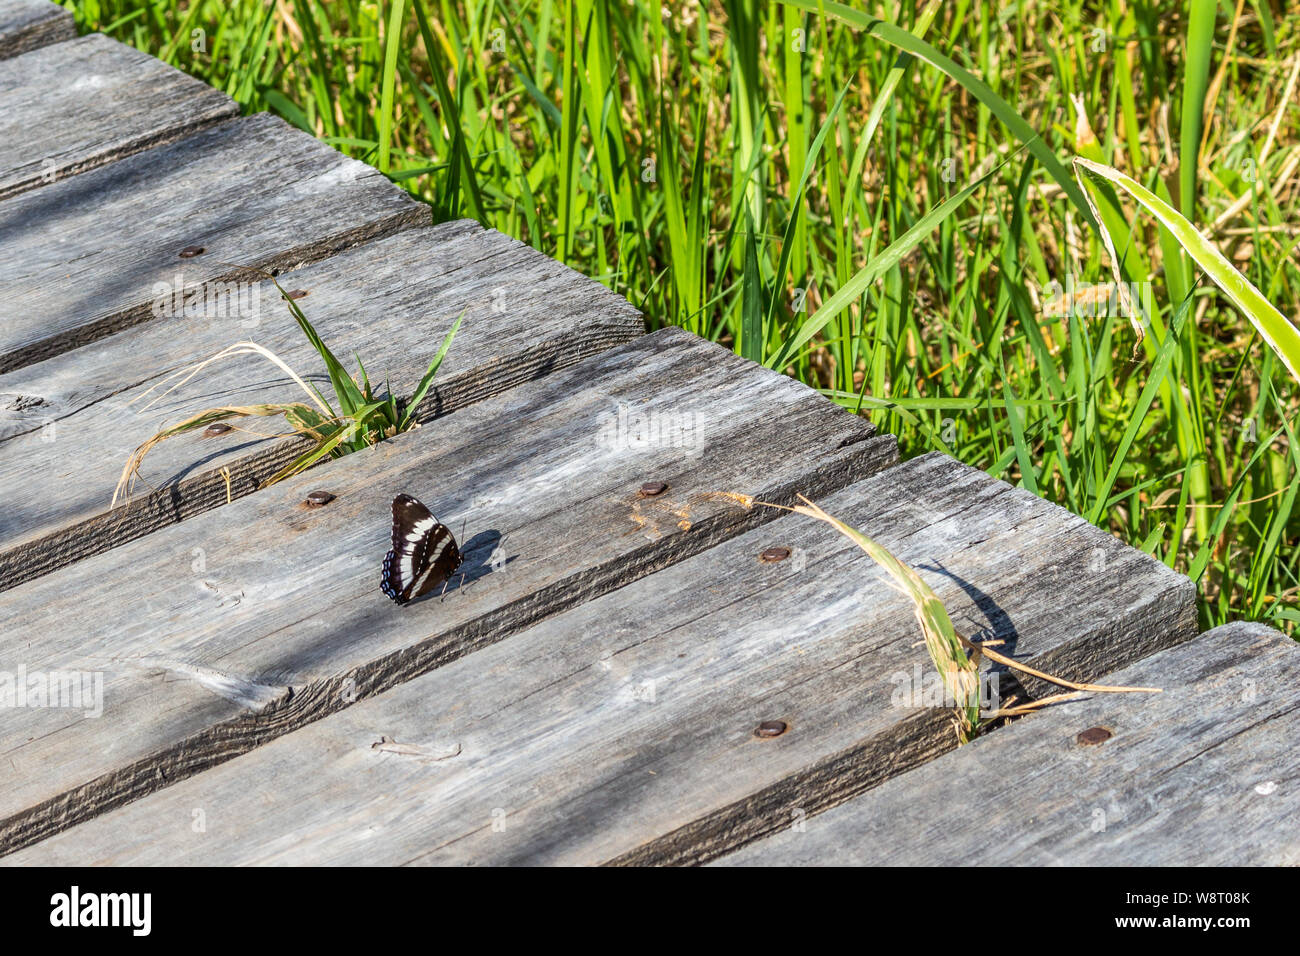 Un bianco admiral butterfly si prende una pausa dal volo su una passerella in una palude. Coltelli verdi di erba la linea dei bordi del legno usurato. Foto Stock